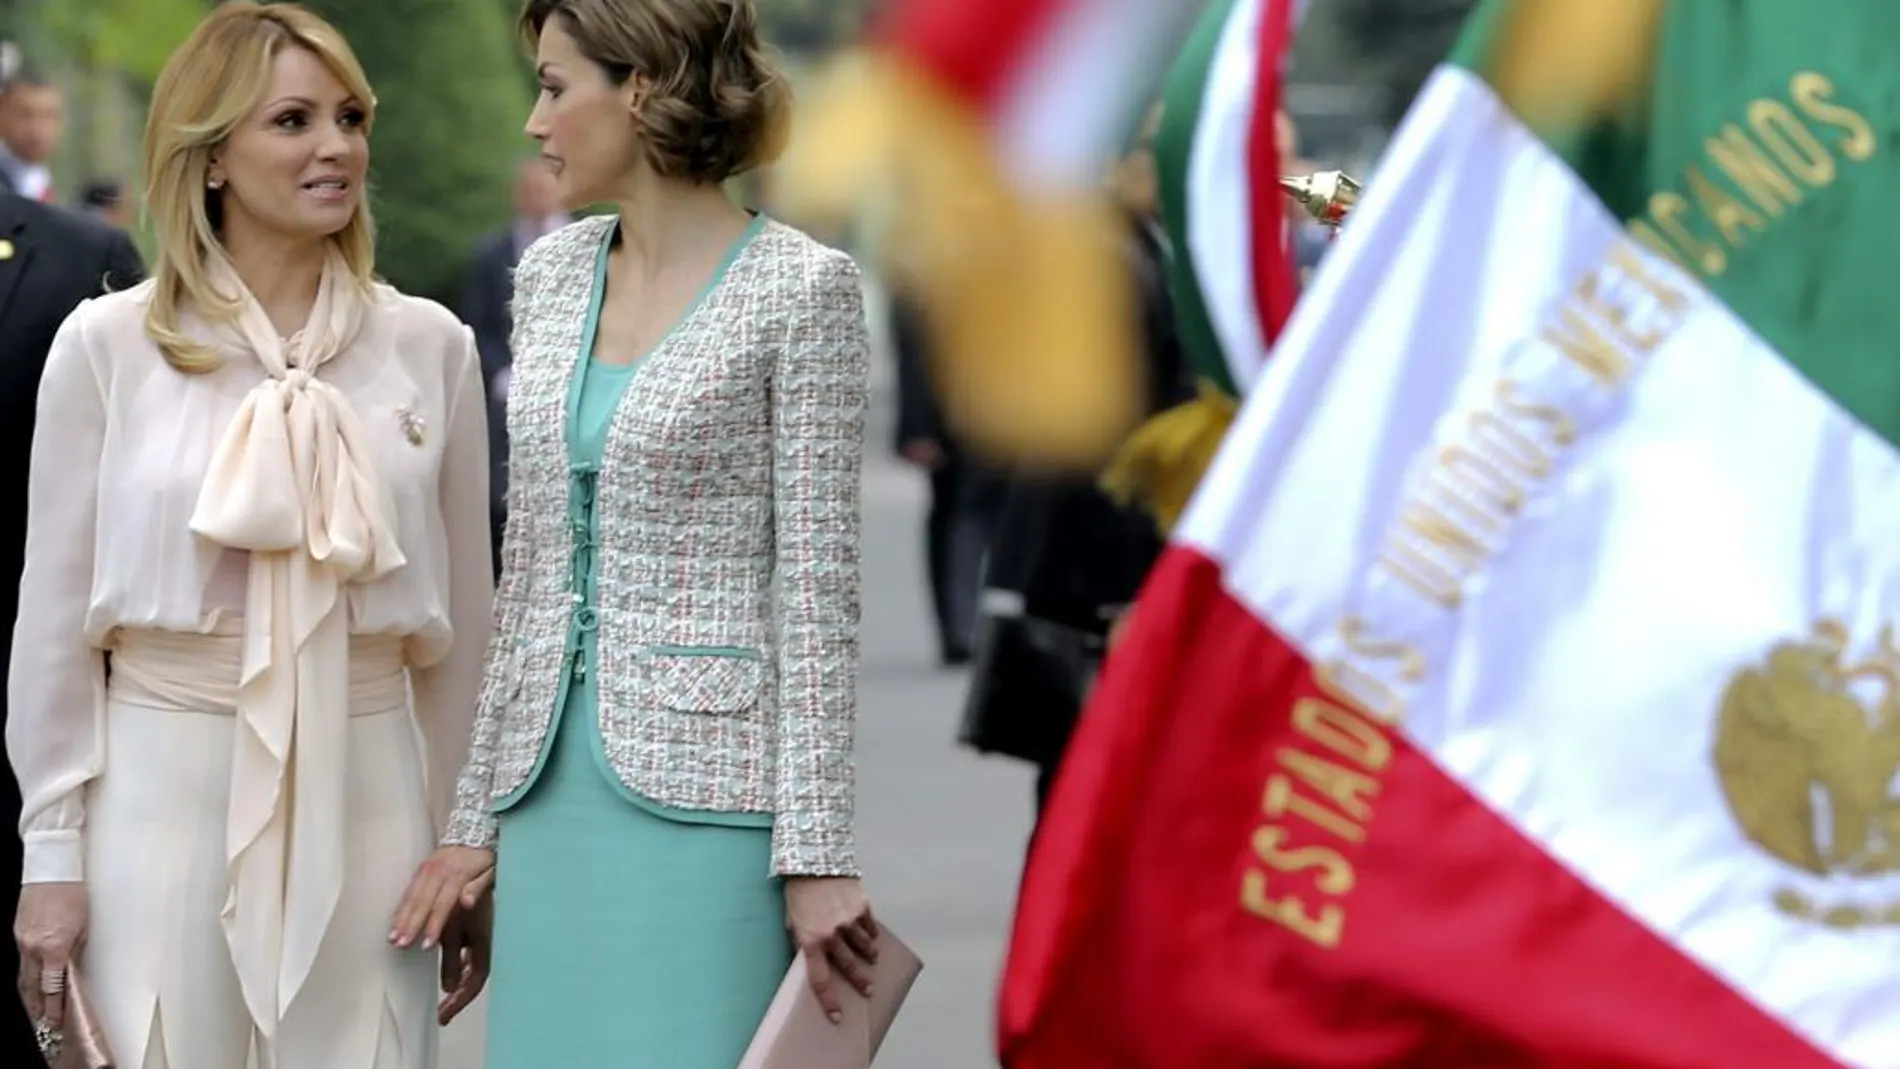 La Reina Letizia conversa con Ángelica Rivera, esposa del presidente del país, Enrique Peña Nieto